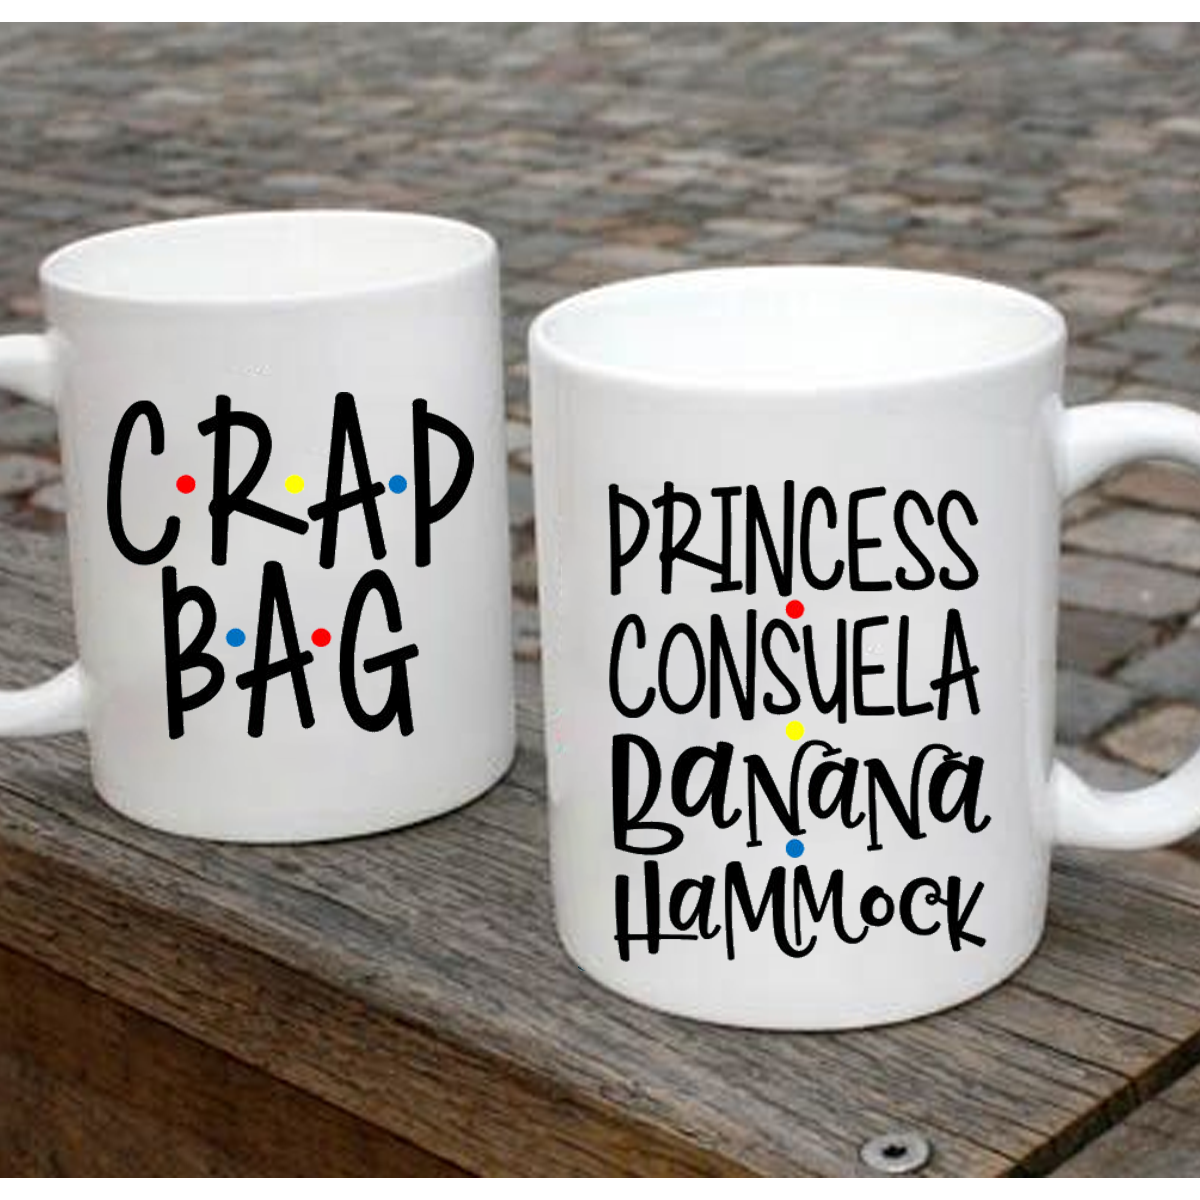 Princess Consuela Banana Hammock, Crap Bag -  cute coffee/tea Mug.